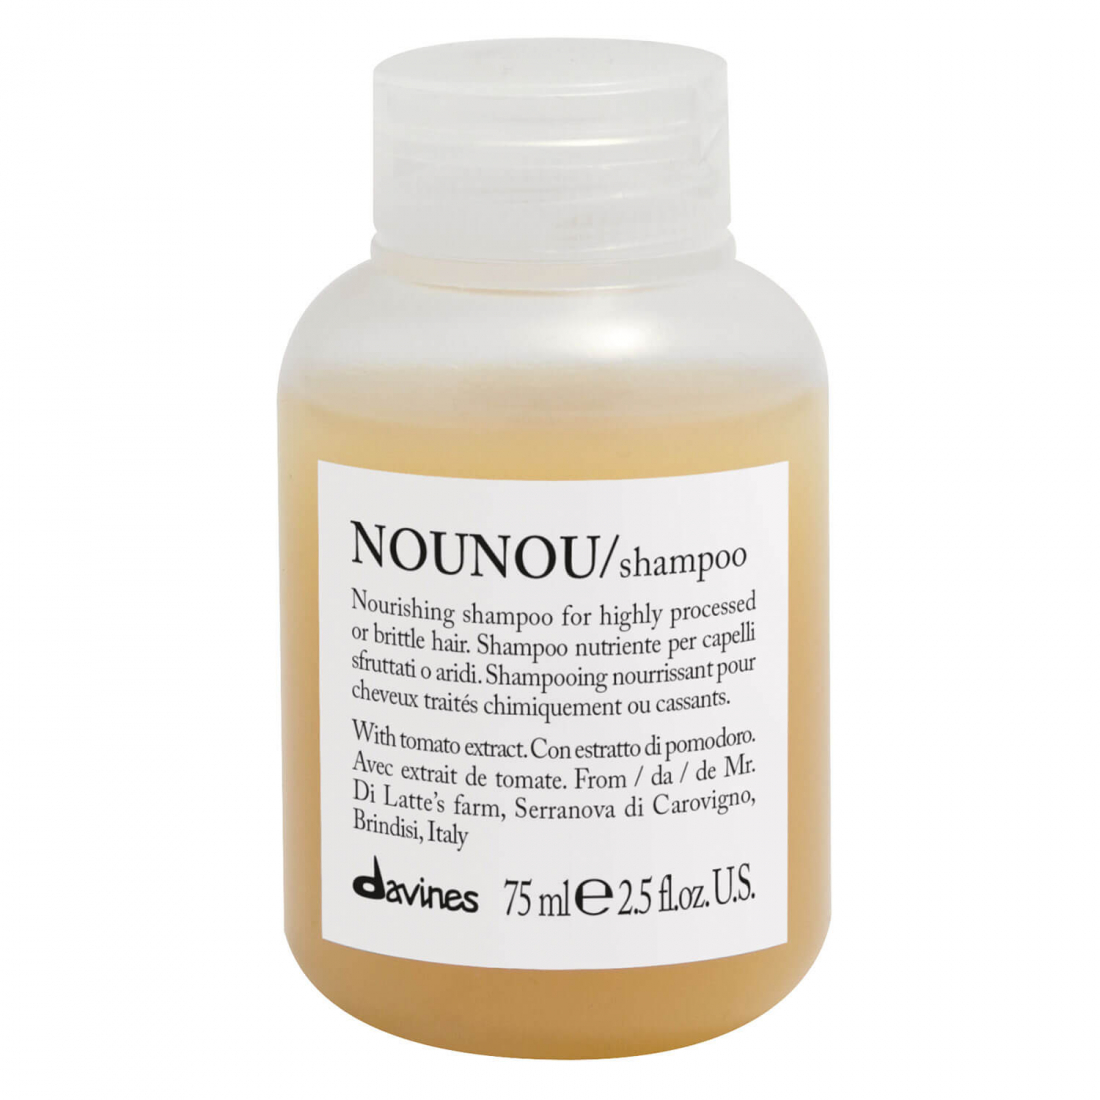 Shampoing 'Nounou' - 75 ml